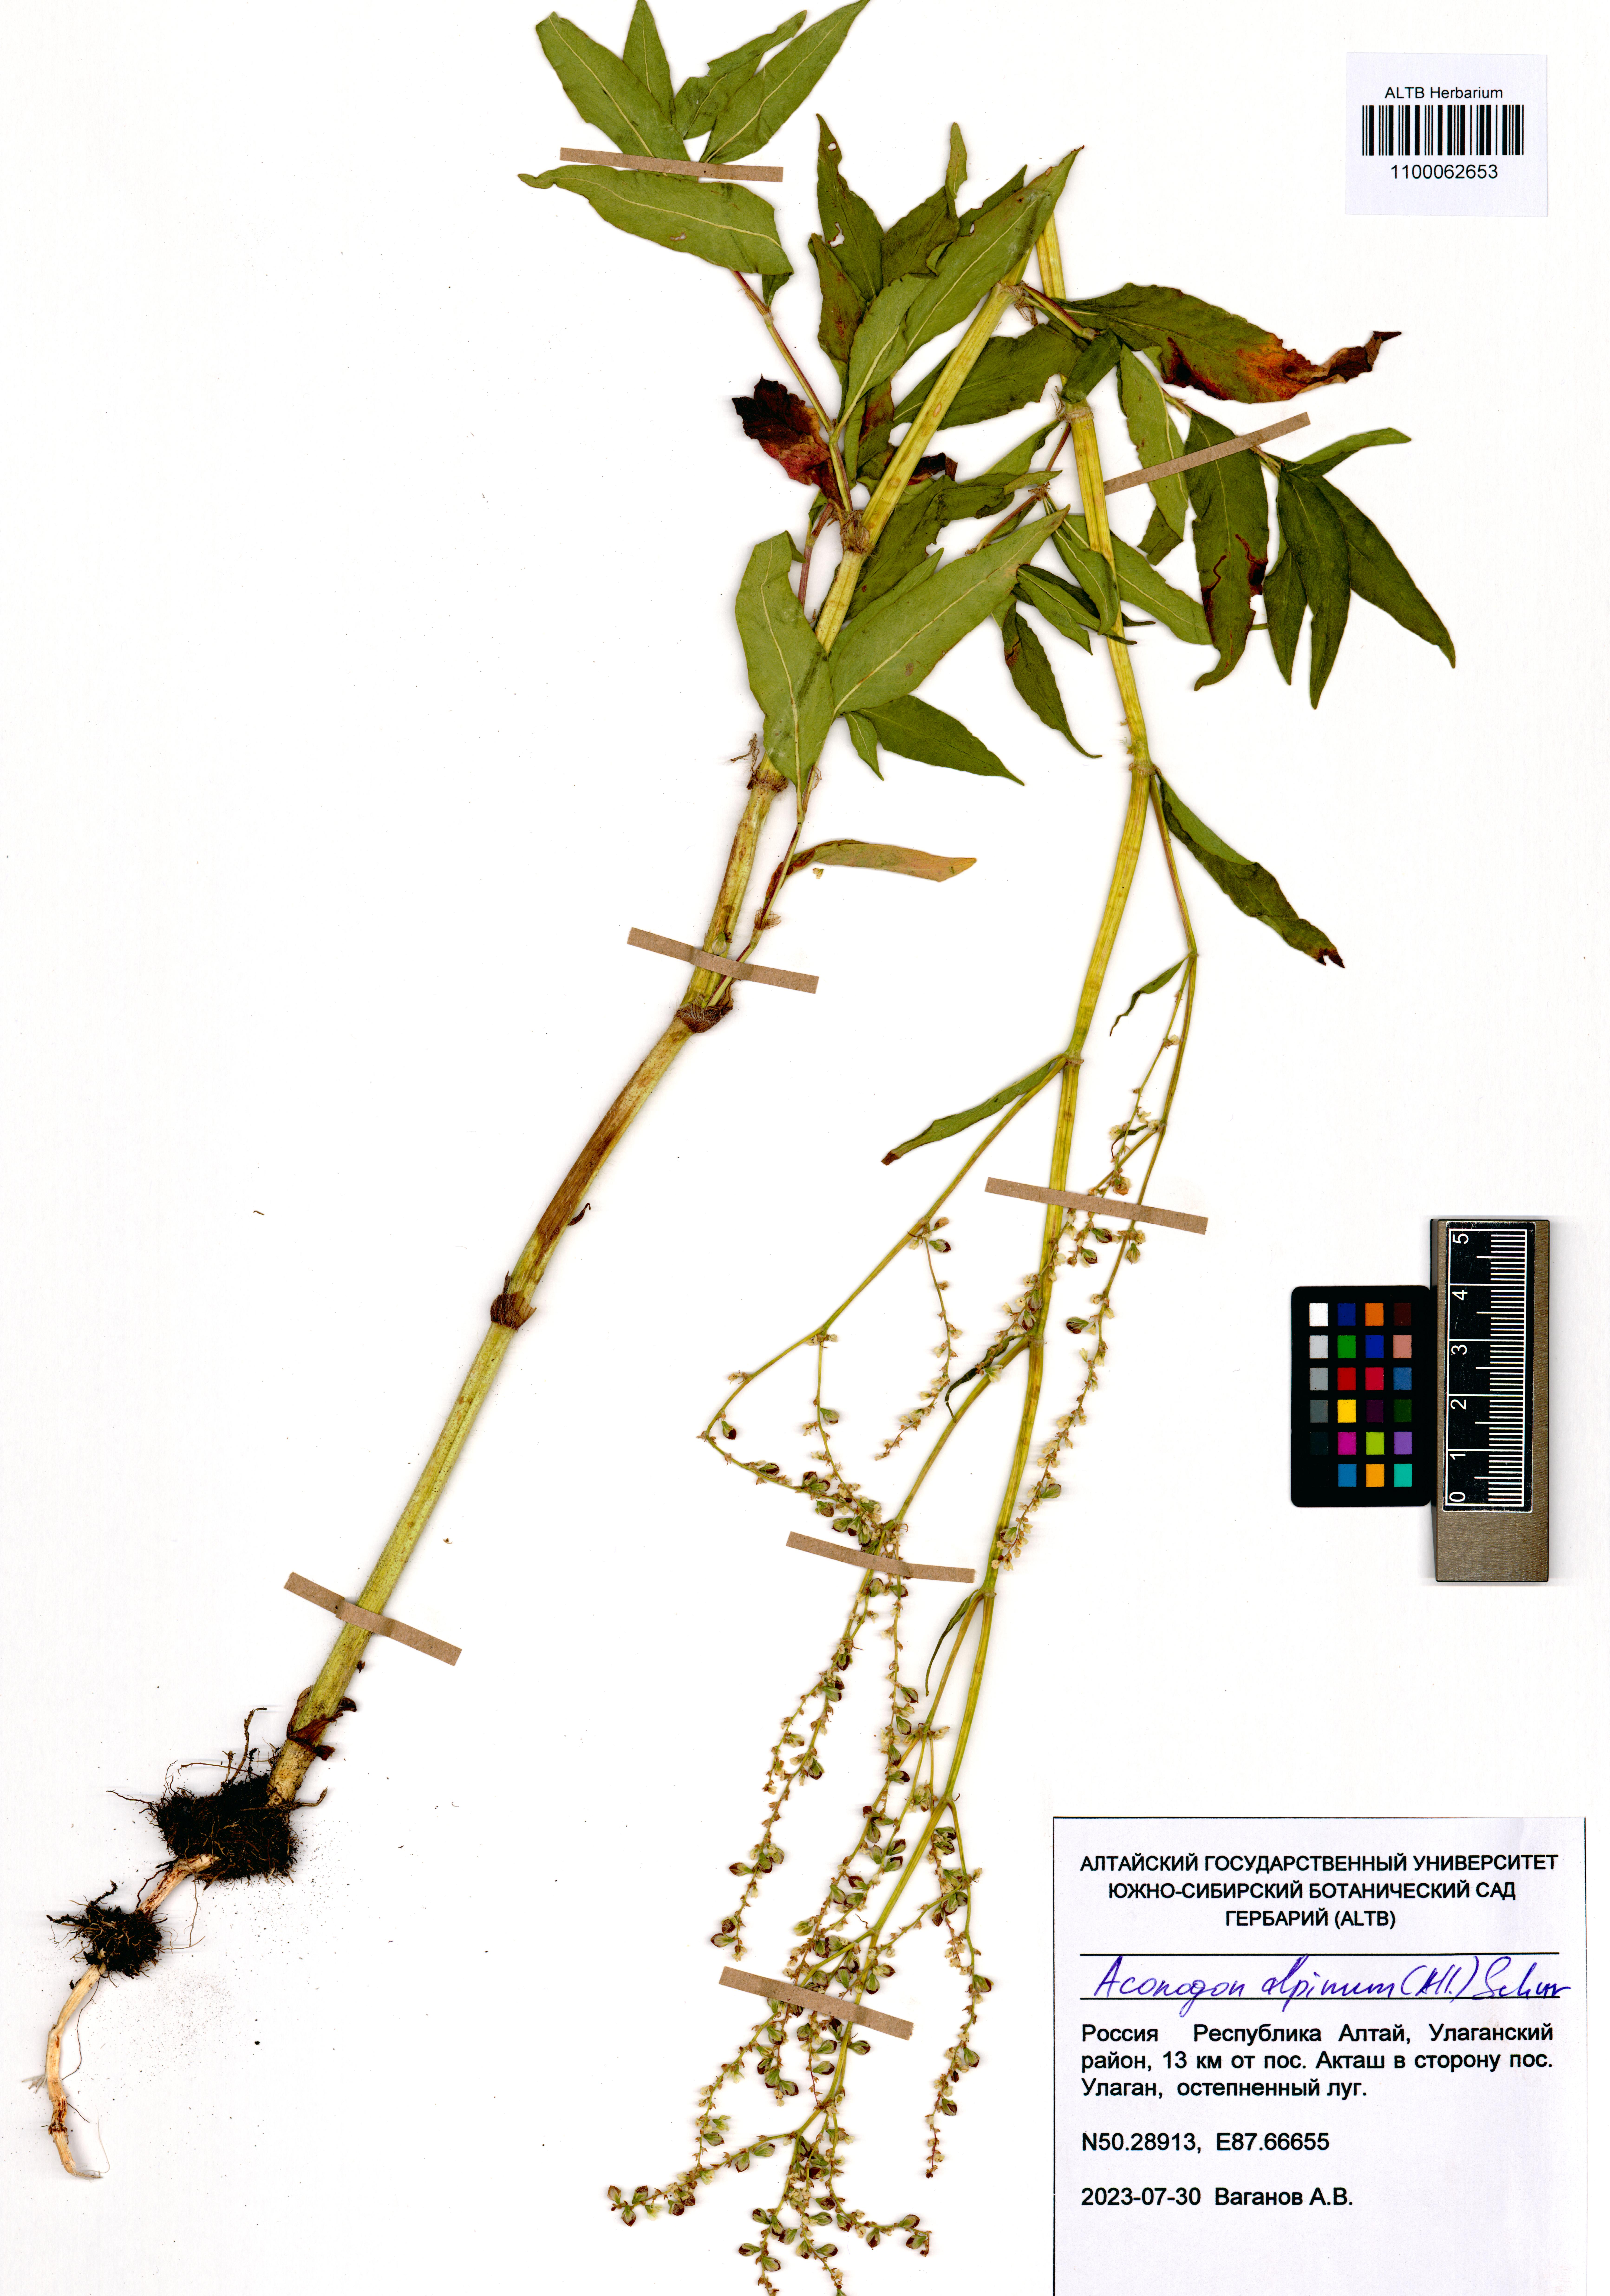 Aconogonon alpinum (All.) Schur